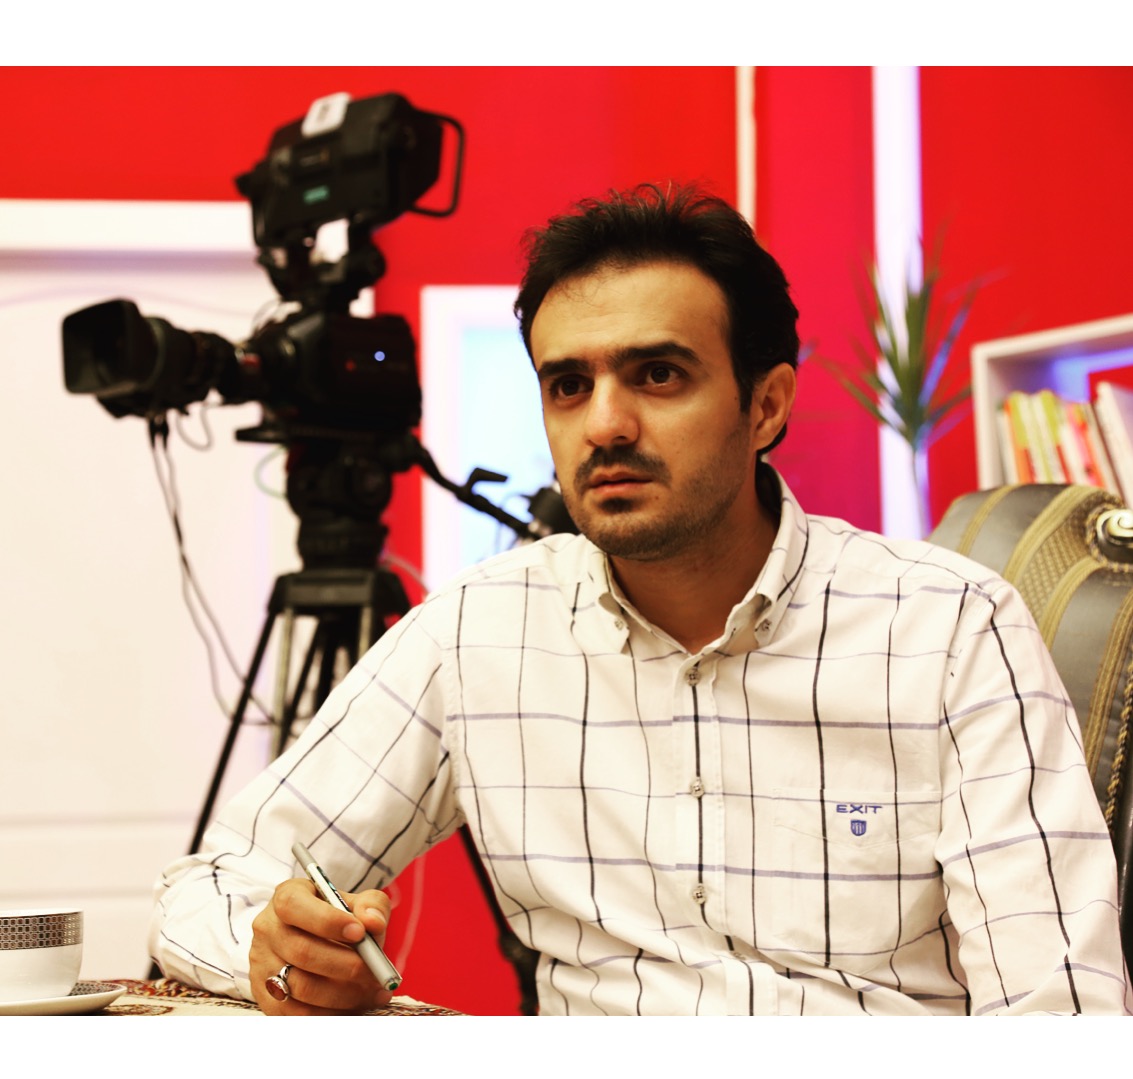 تصویری از مرتضی یعقوبی، تهیه کننده سینما و تلویزیون در حال بازیگری سر صحنه یکی از آثارش